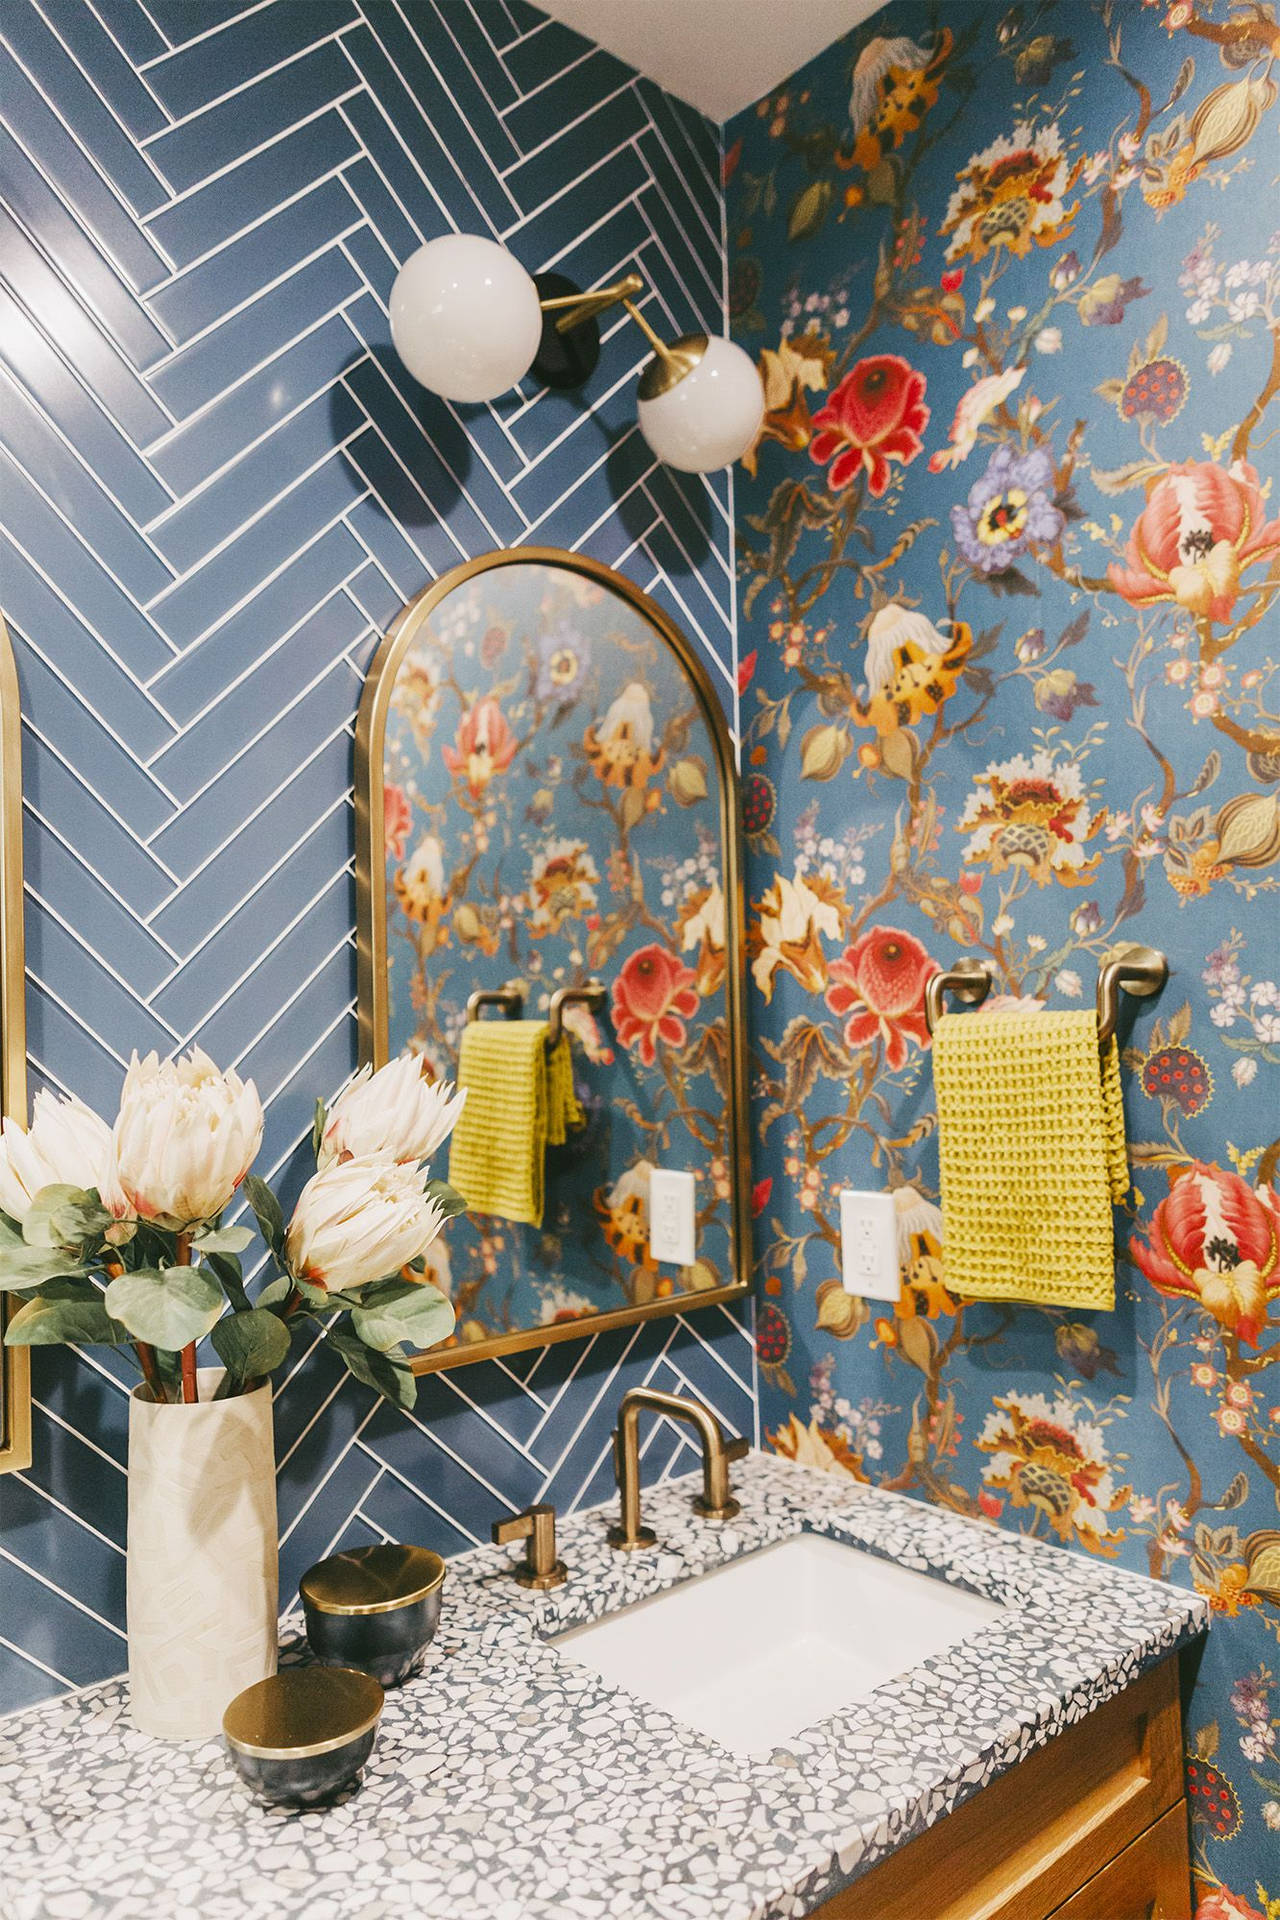 Bạn cần tìm kiếm sự hướng dẫn cách trang trí phòng tắm nhỏ (powder room decorate)?